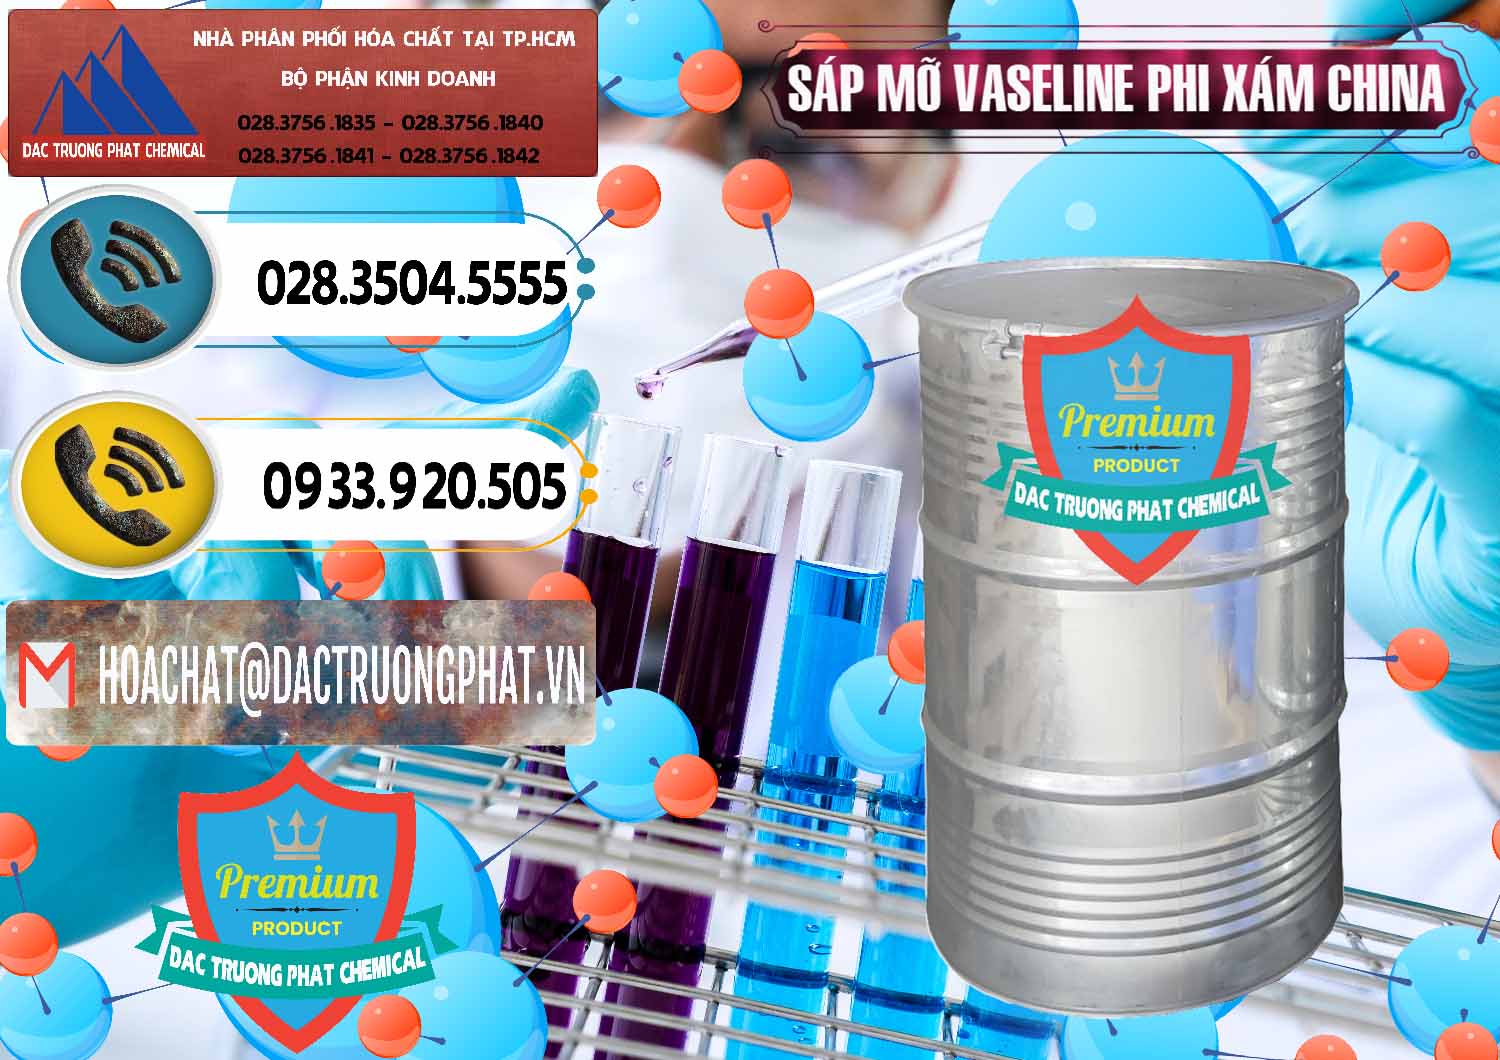 Nơi nhập khẩu - bán Sáp Mỡ Vaseline Phi Xám Trung Quốc China - 0291 - Phân phối & bán hóa chất tại TP.HCM - hoachatdetnhuom.vn